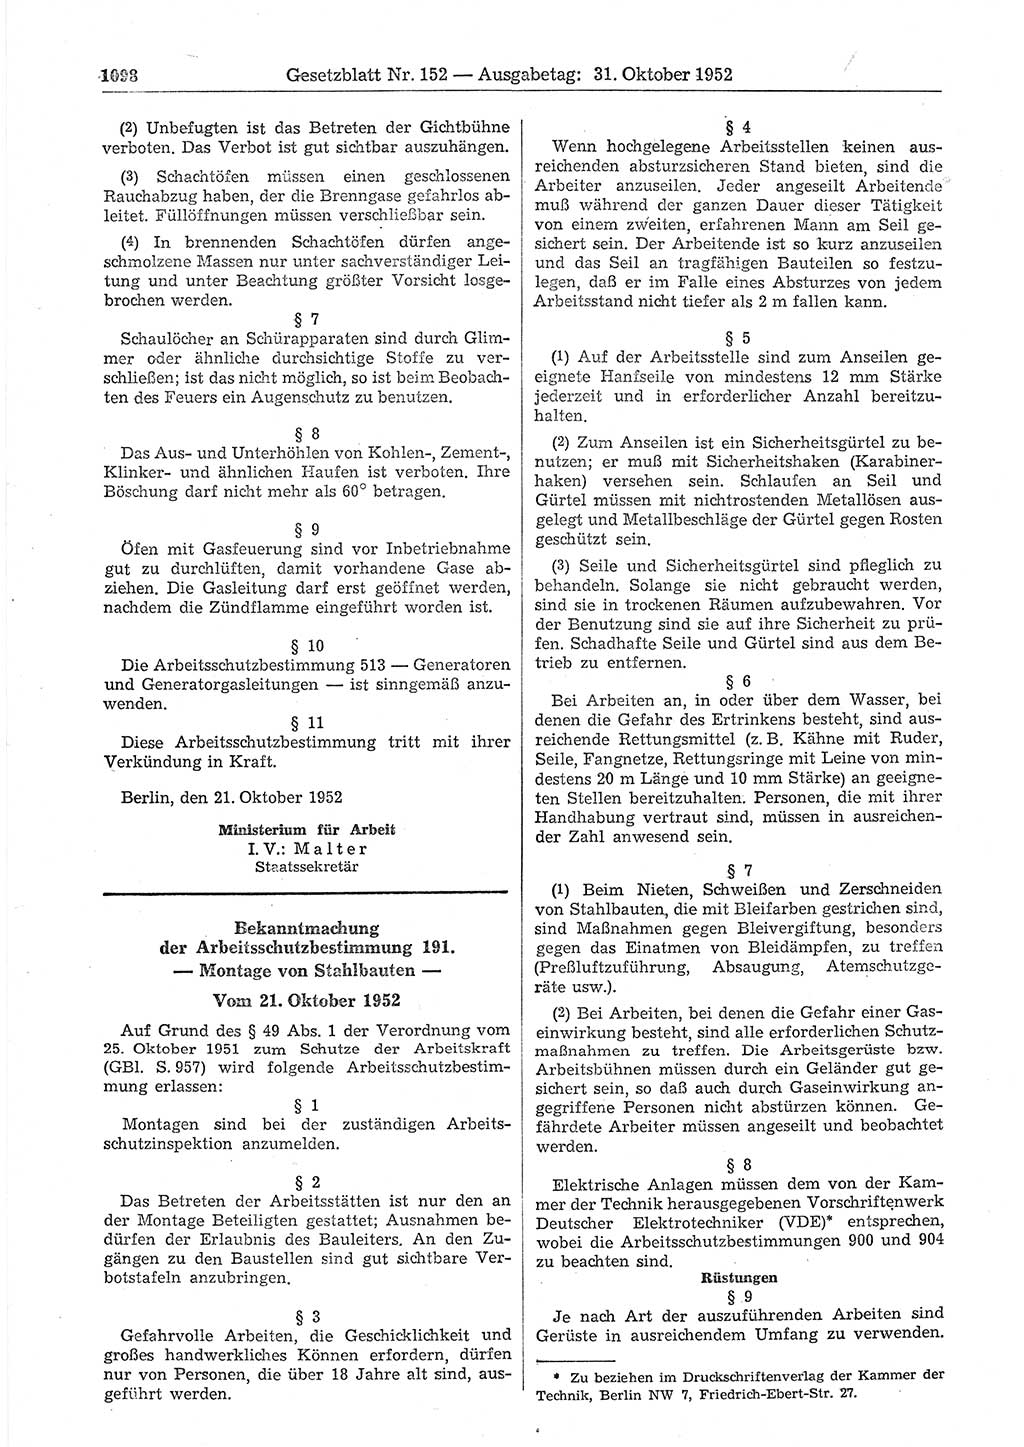 Gesetzblatt (GBl.) der Deutschen Demokratischen Republik (DDR) 1952, Seite 1098 (GBl. DDR 1952, S. 1098)